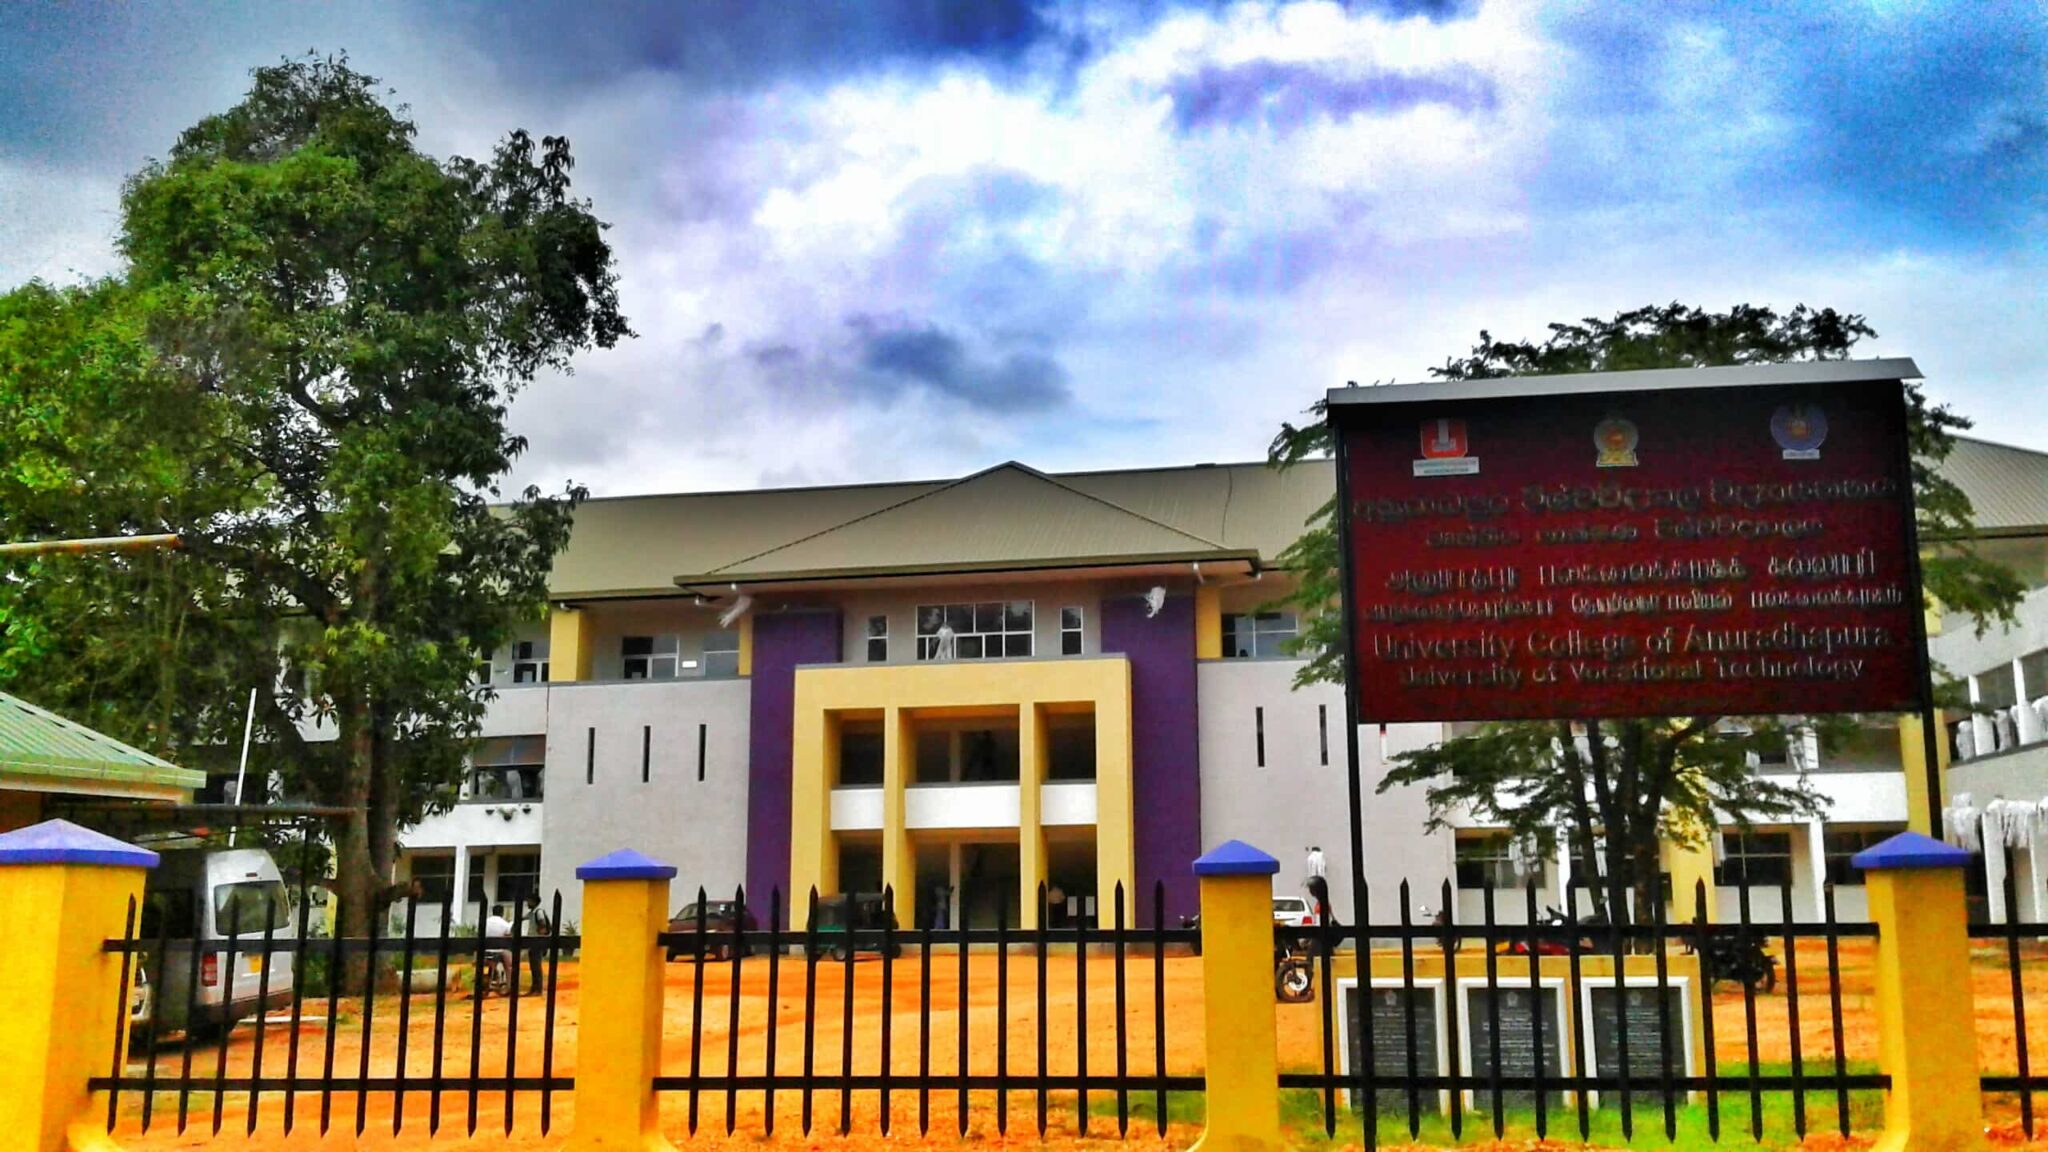 University College of Anuradhapura